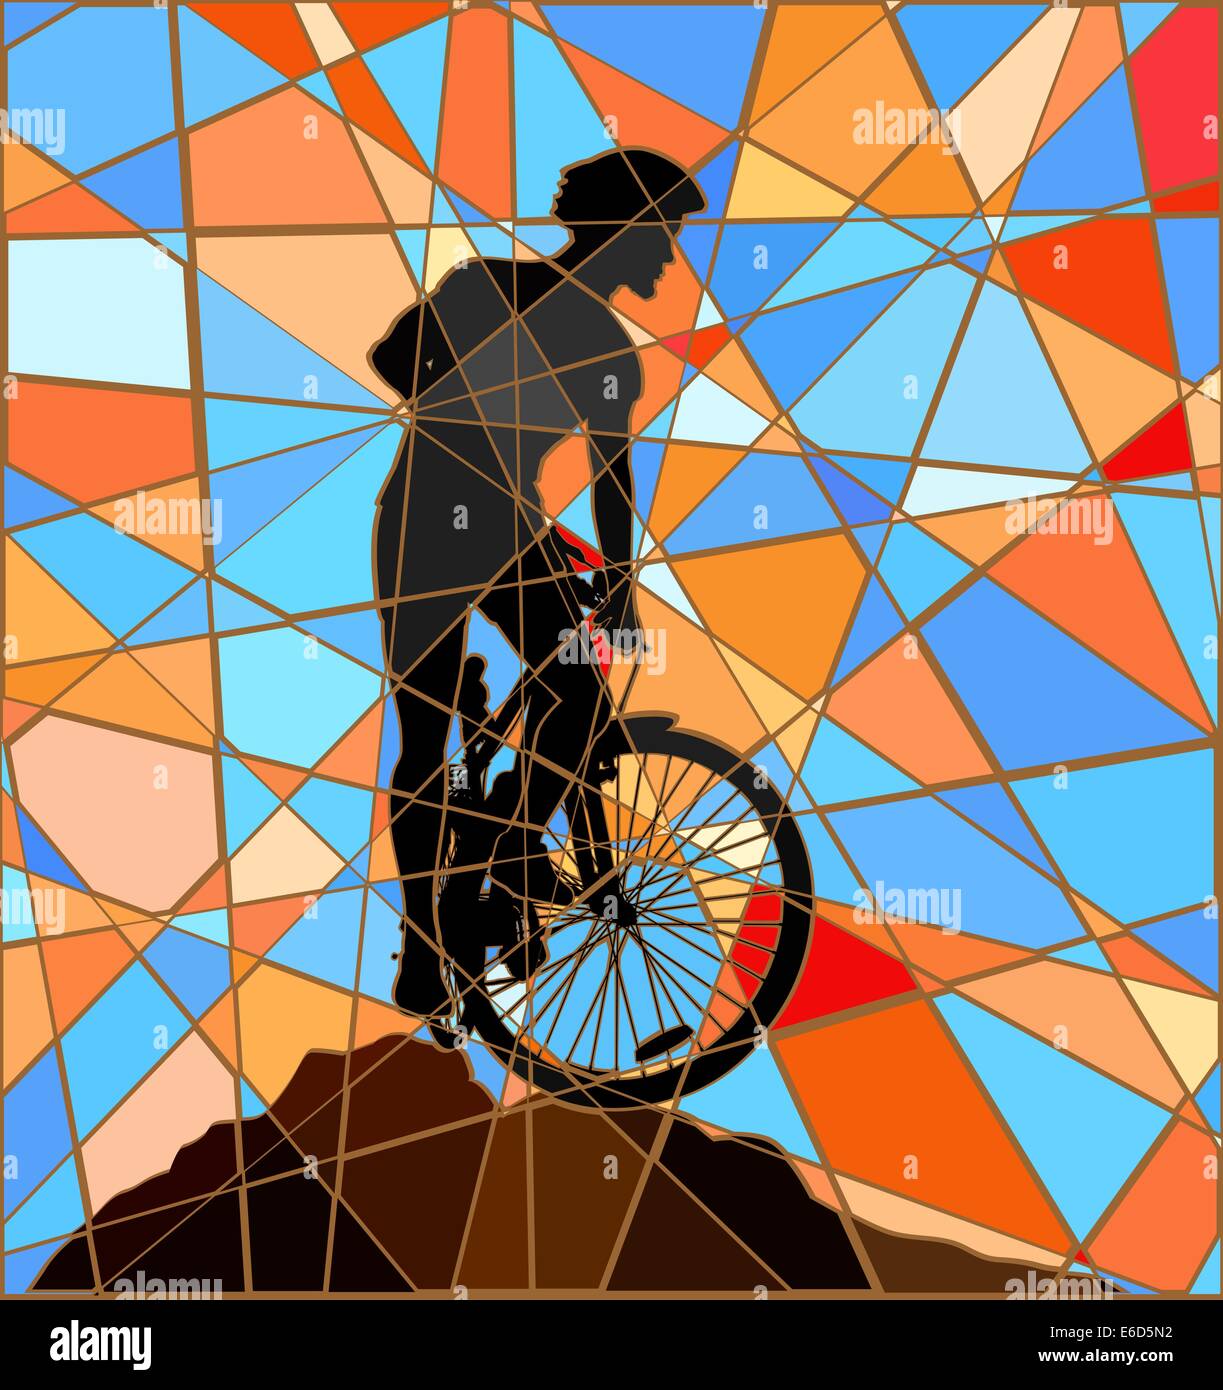 Editierbare Vektorgrafik buntes Mosaik einer Mountain Biker Silhouette hoch auf einem Bergrücken Stock Vektor